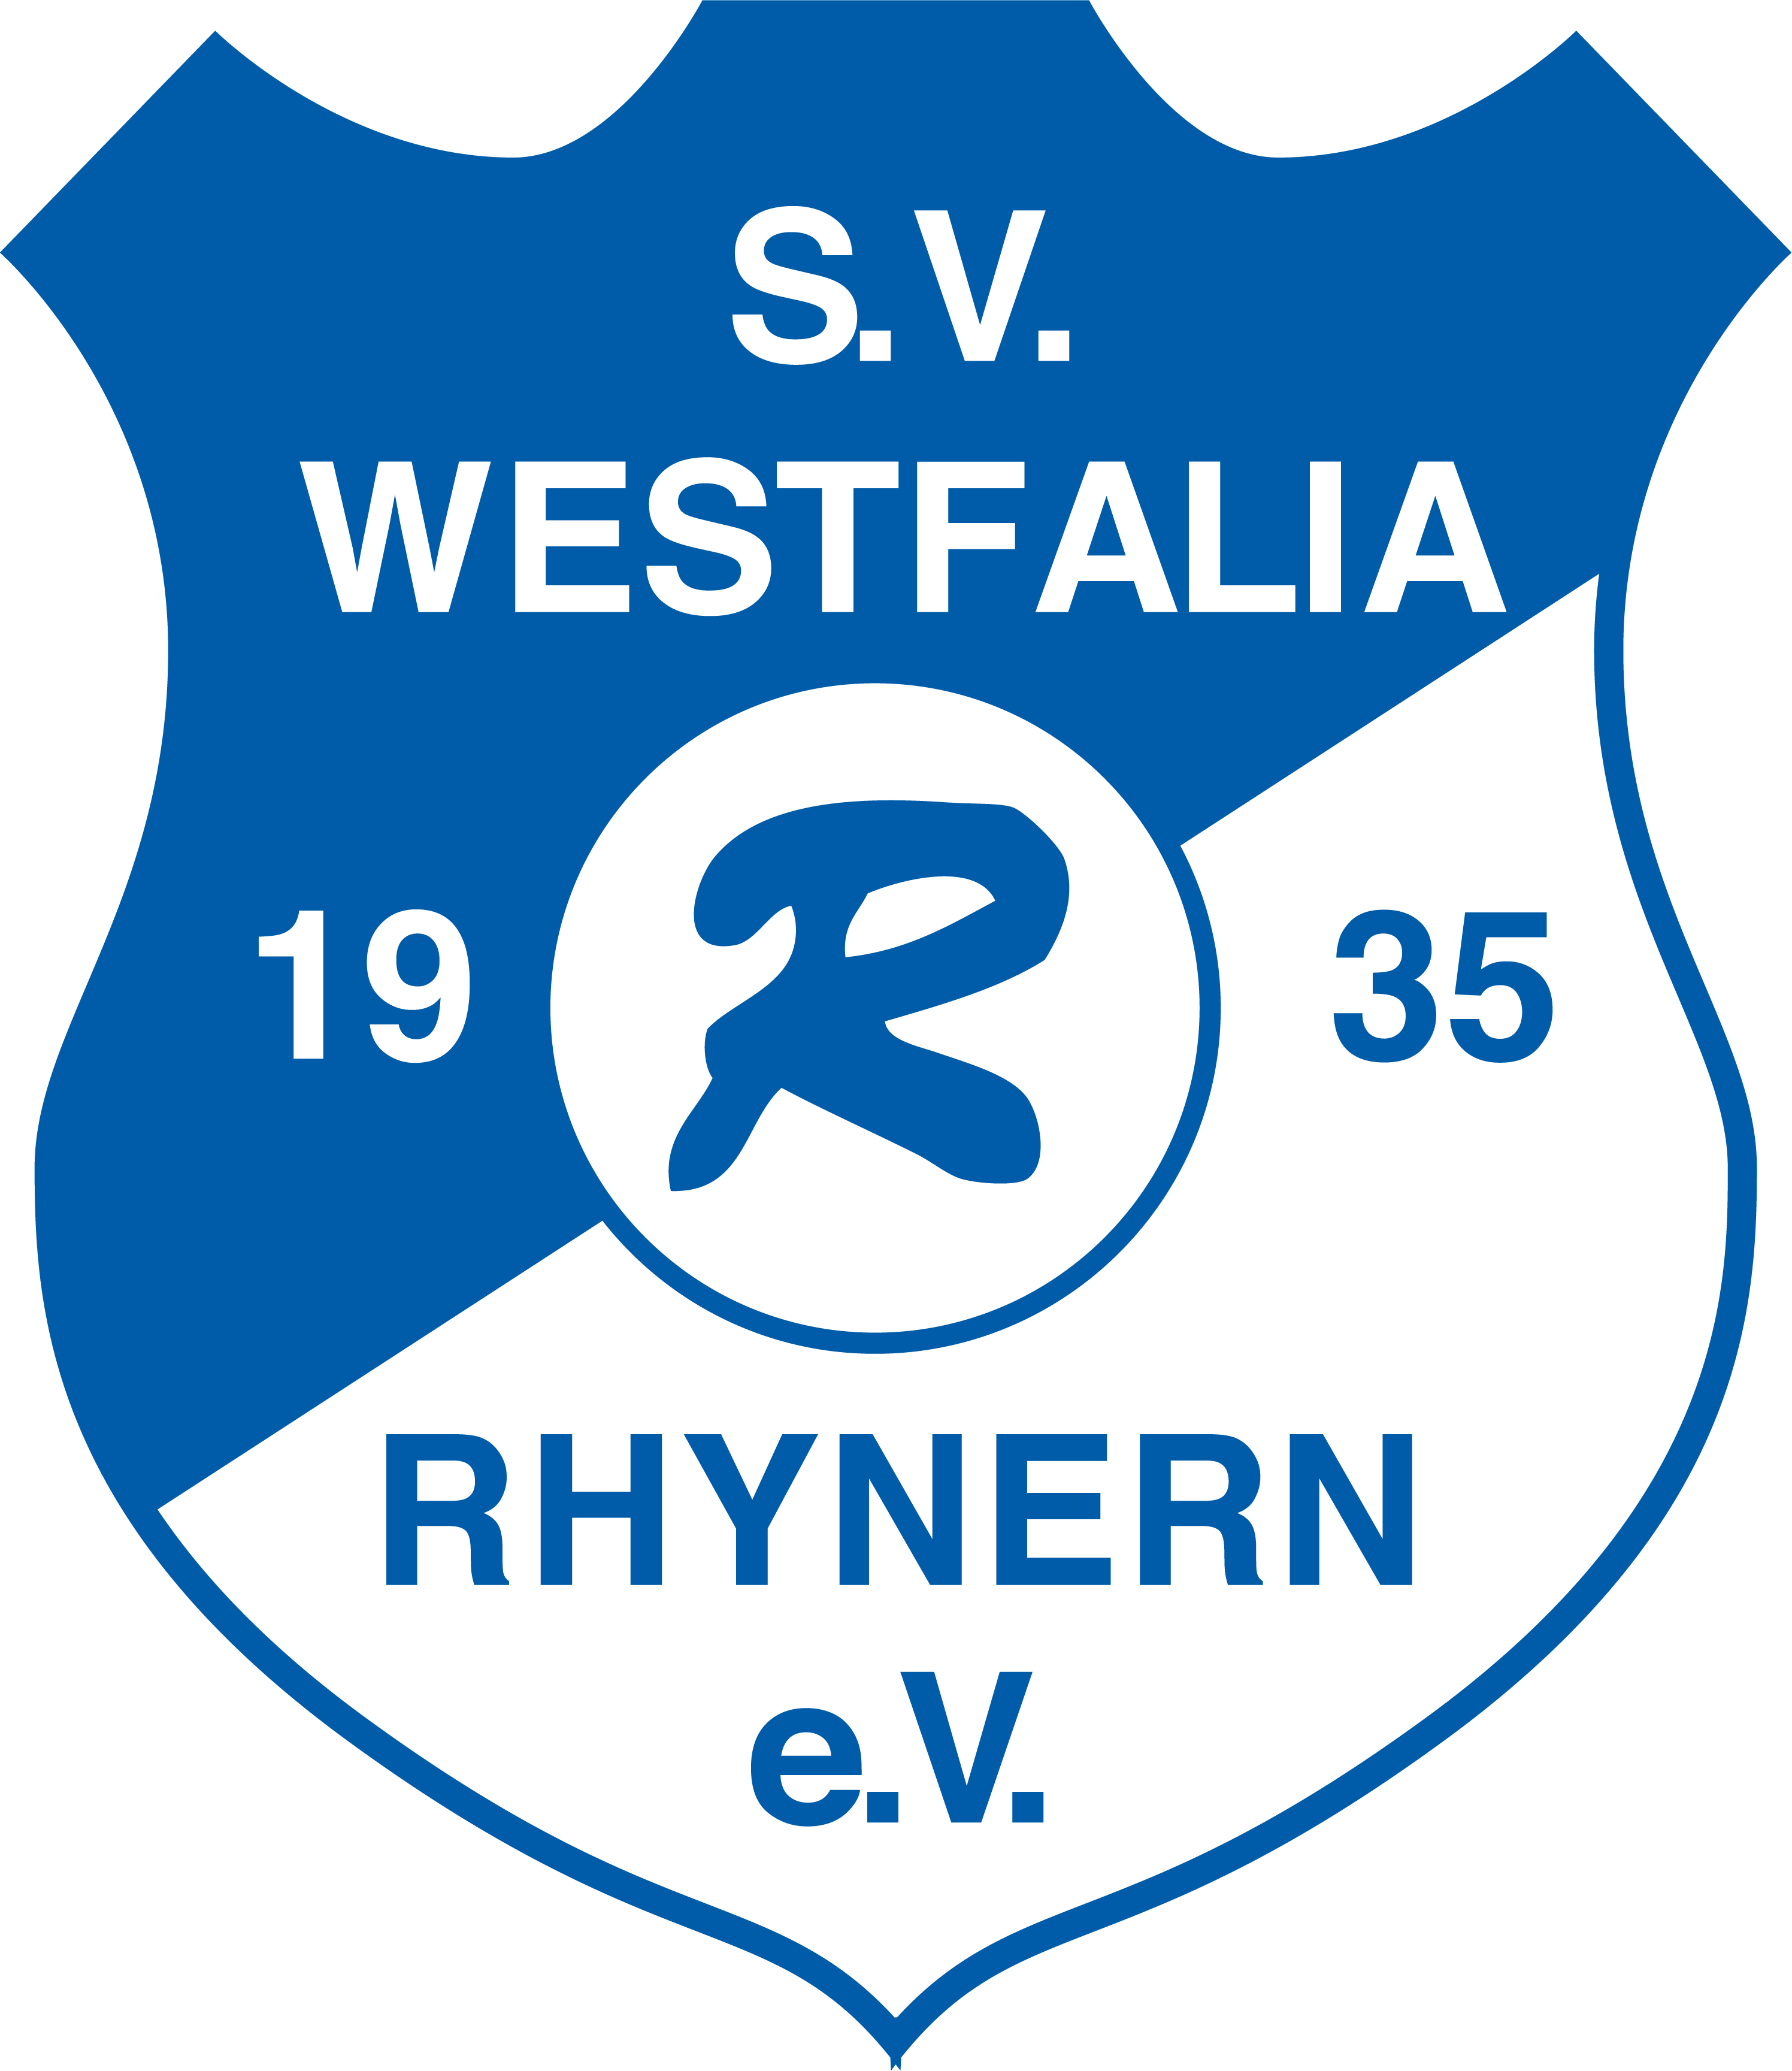 (c) Westfalia-rhynern.de